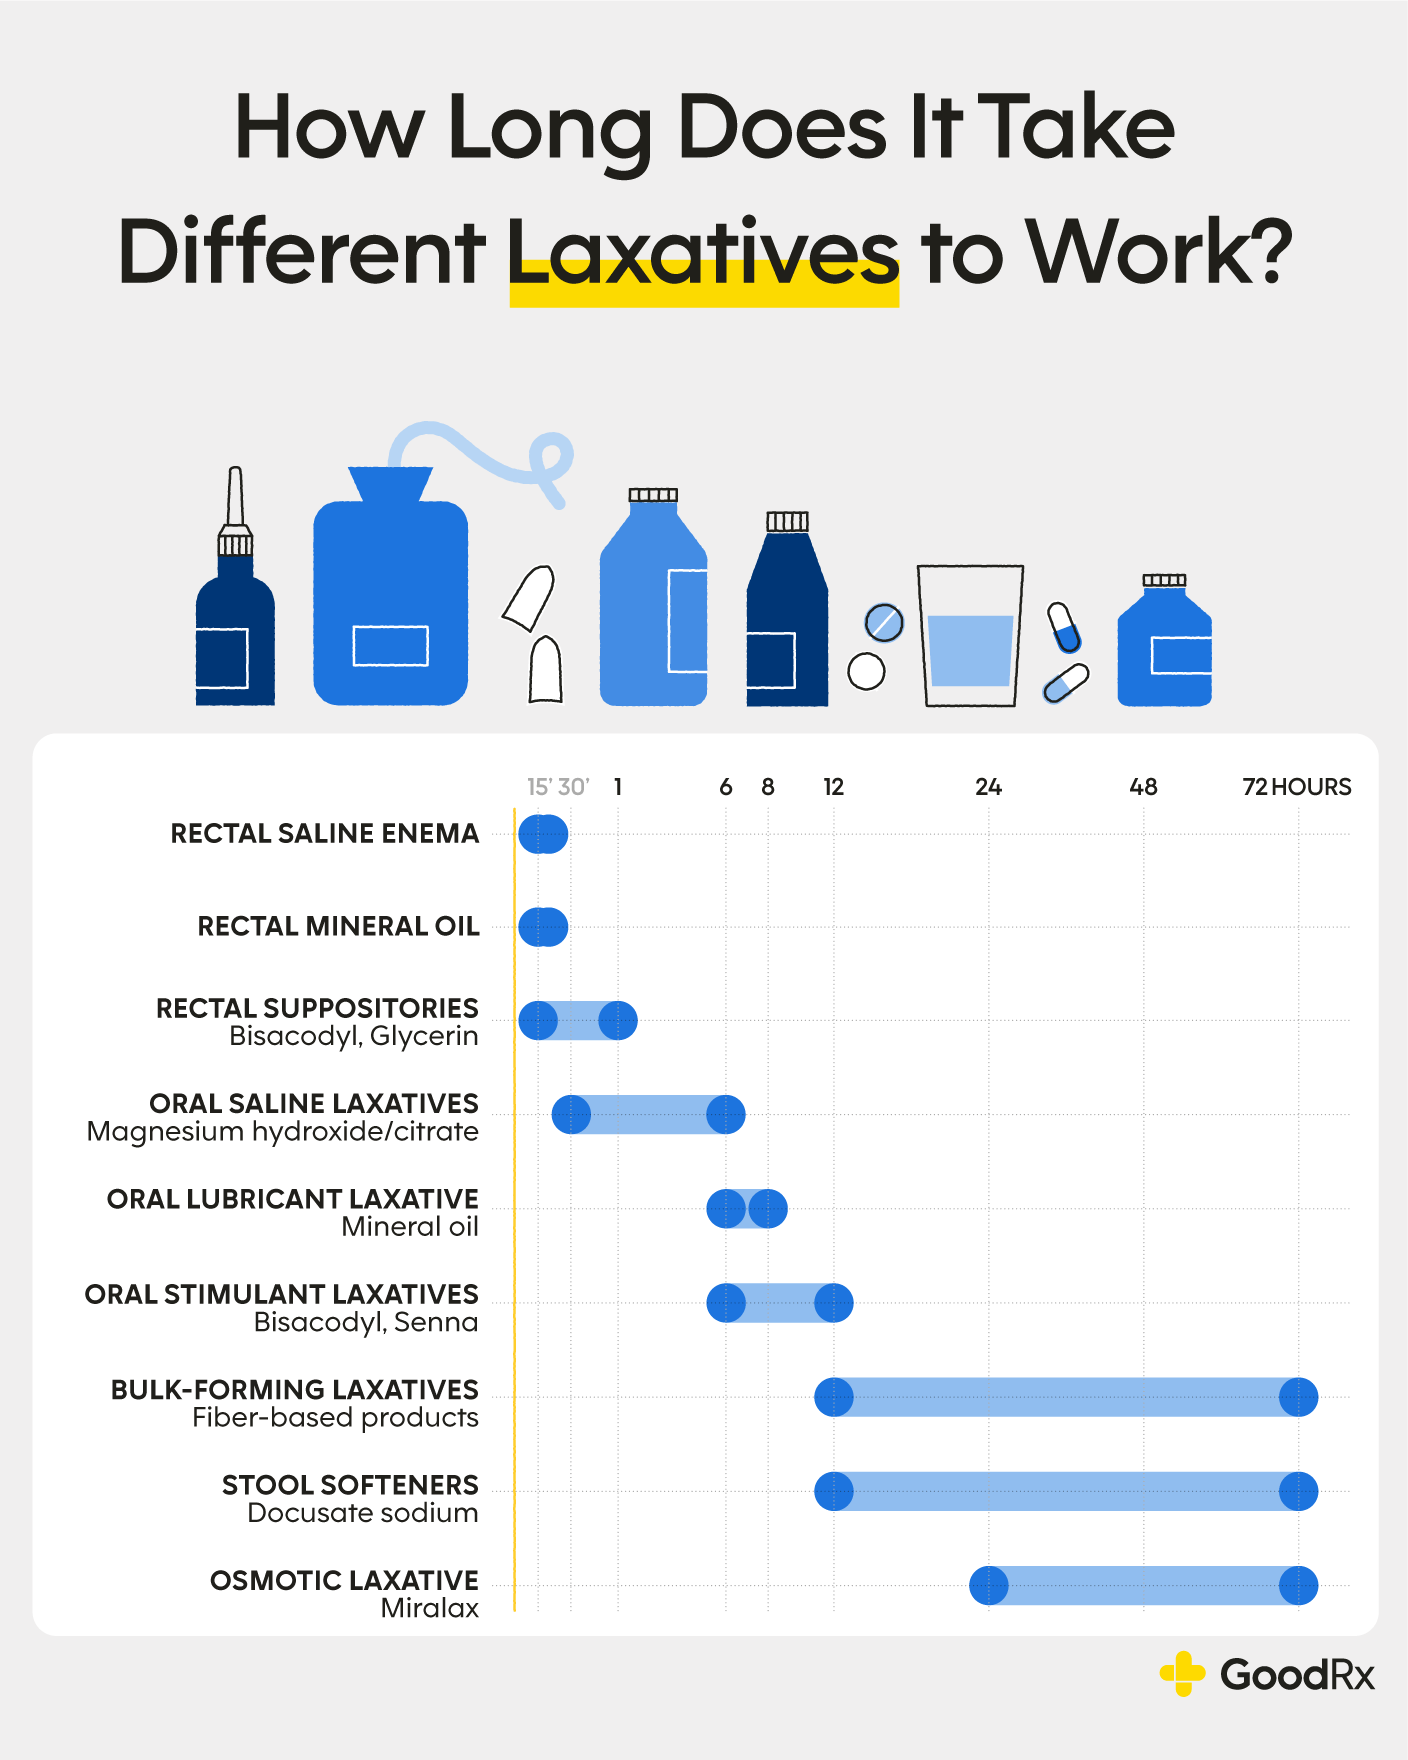 Ex-lax Maximum Strength Stimulant Laxative, 48 Pills by Ex-lax